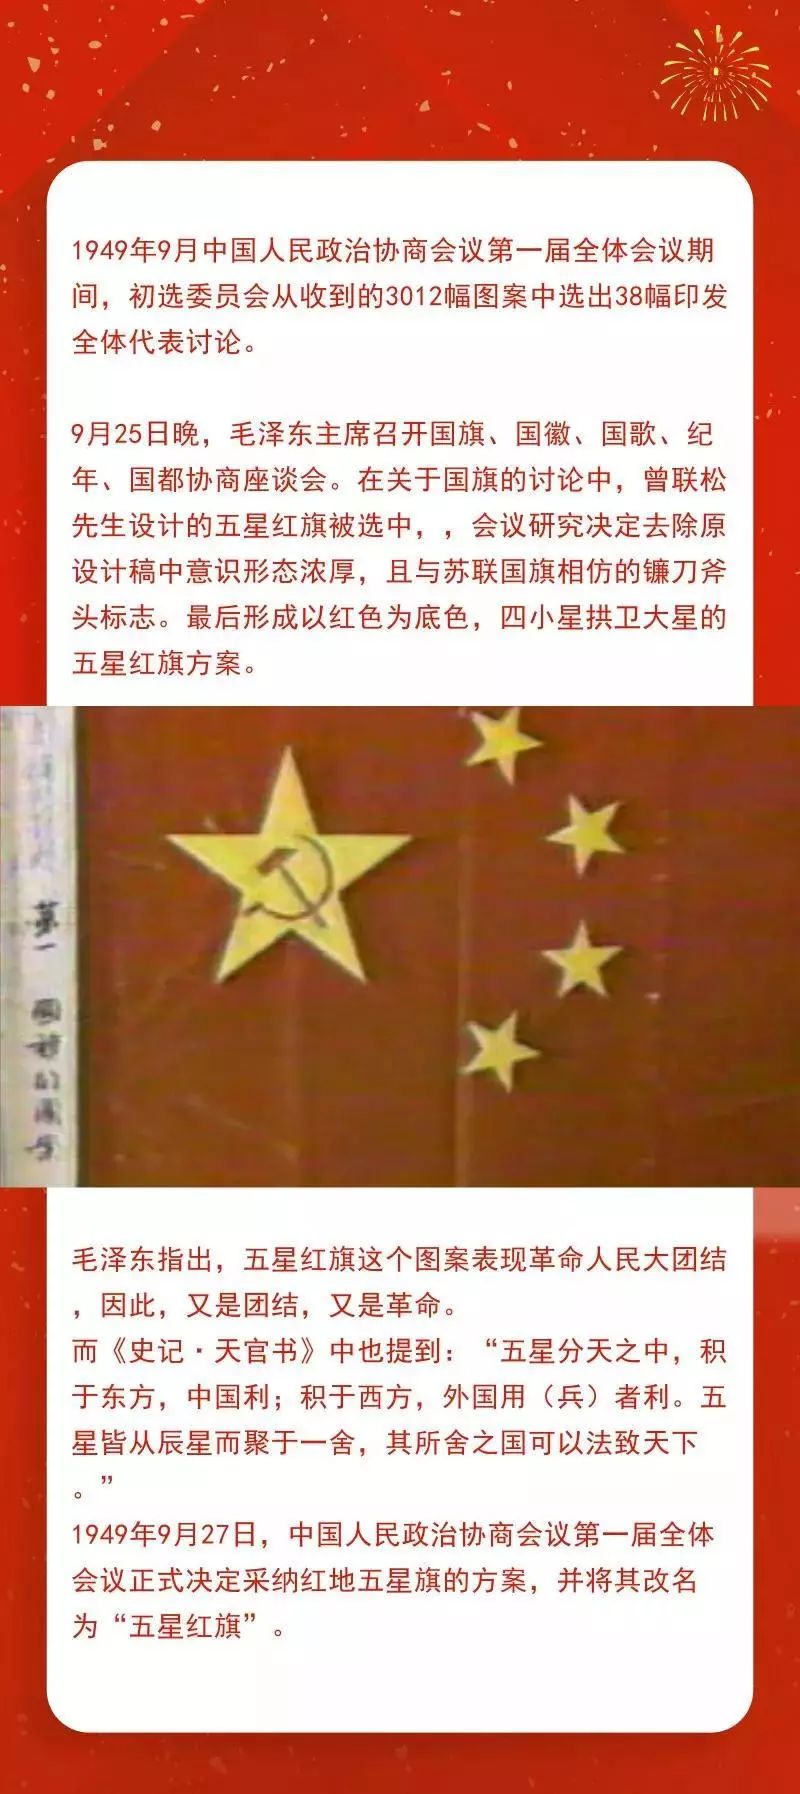 五星红旗的象征图片